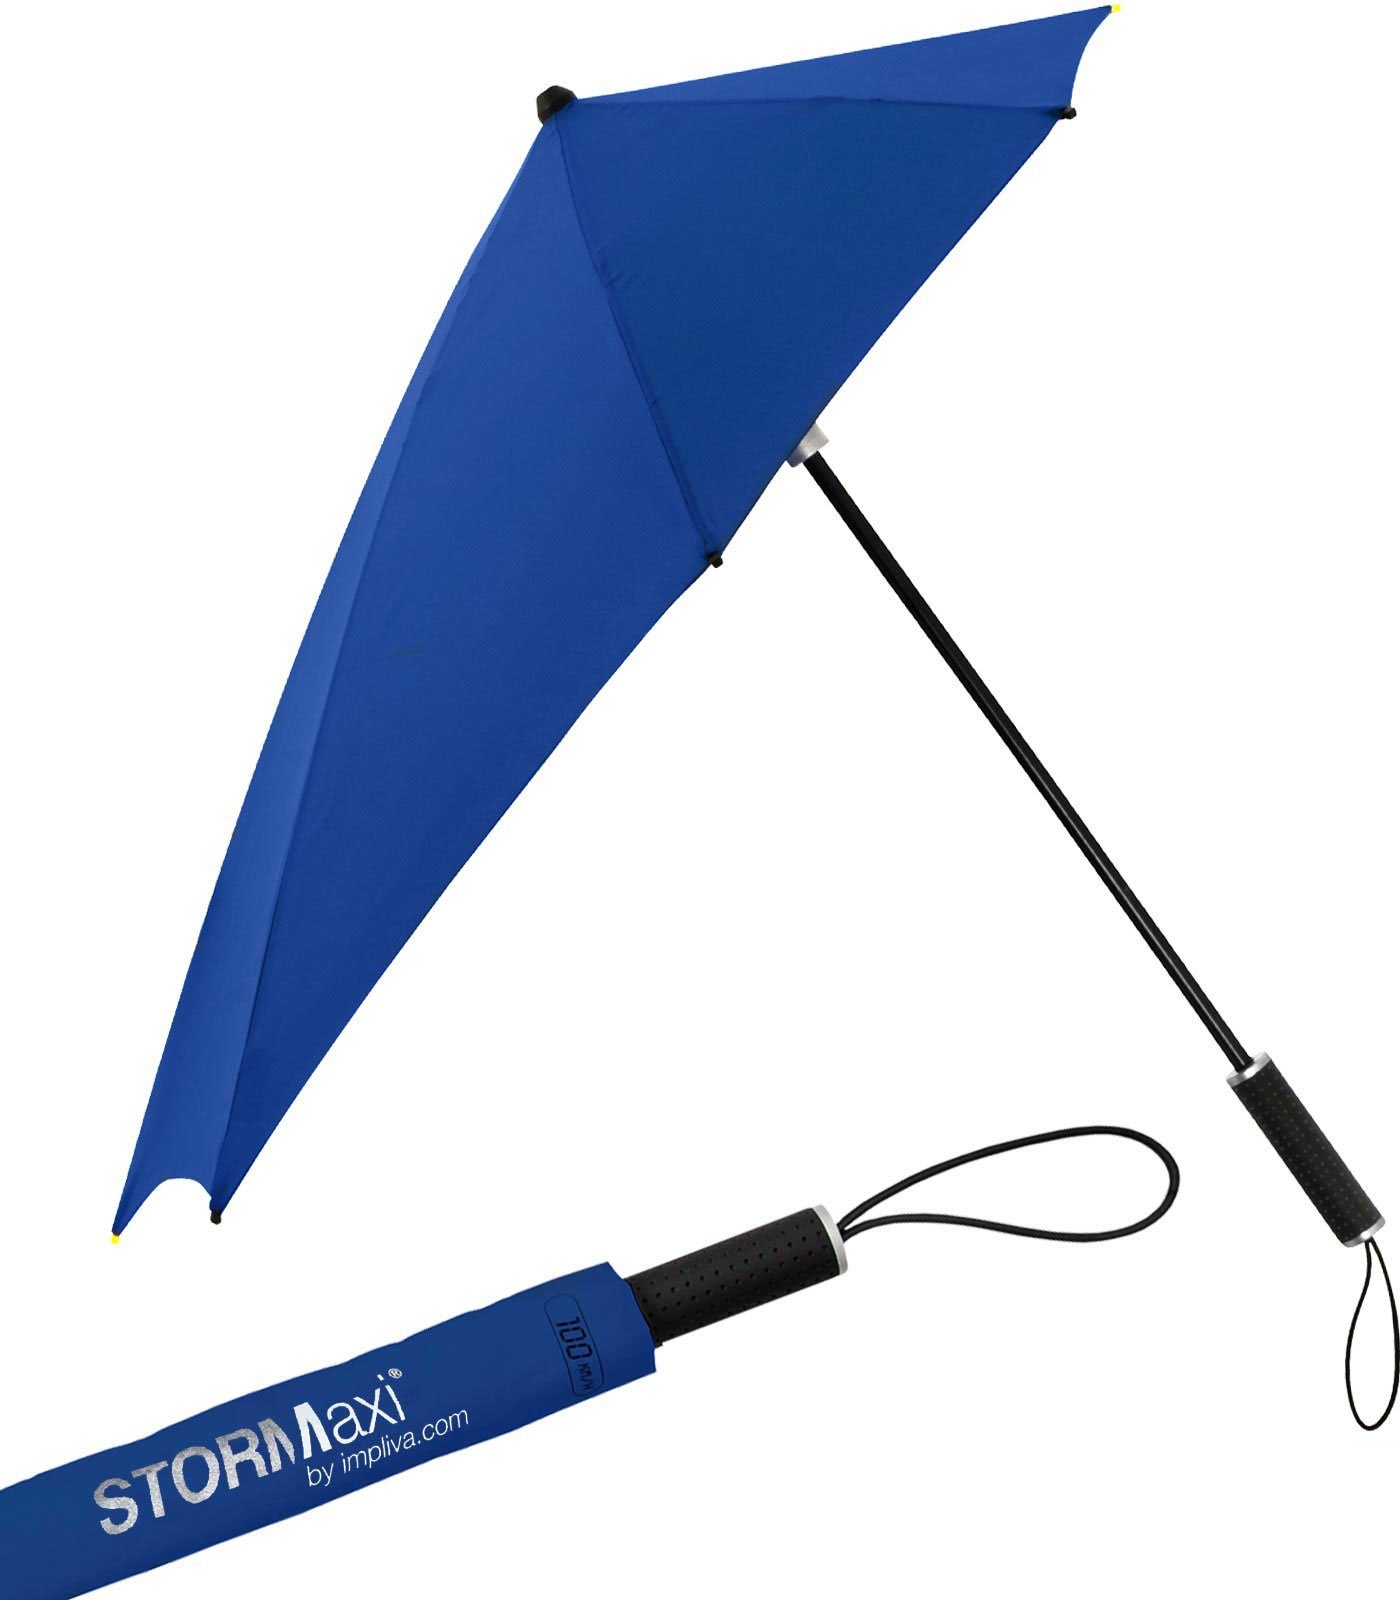 Schirm sich Stockregenschirm Form seine hält durch in aus bis der besondere Wind, Regenschirm, den navy Impliva 100 zu aerodynamischer km/h dreht STORMaxi Sturmschirm